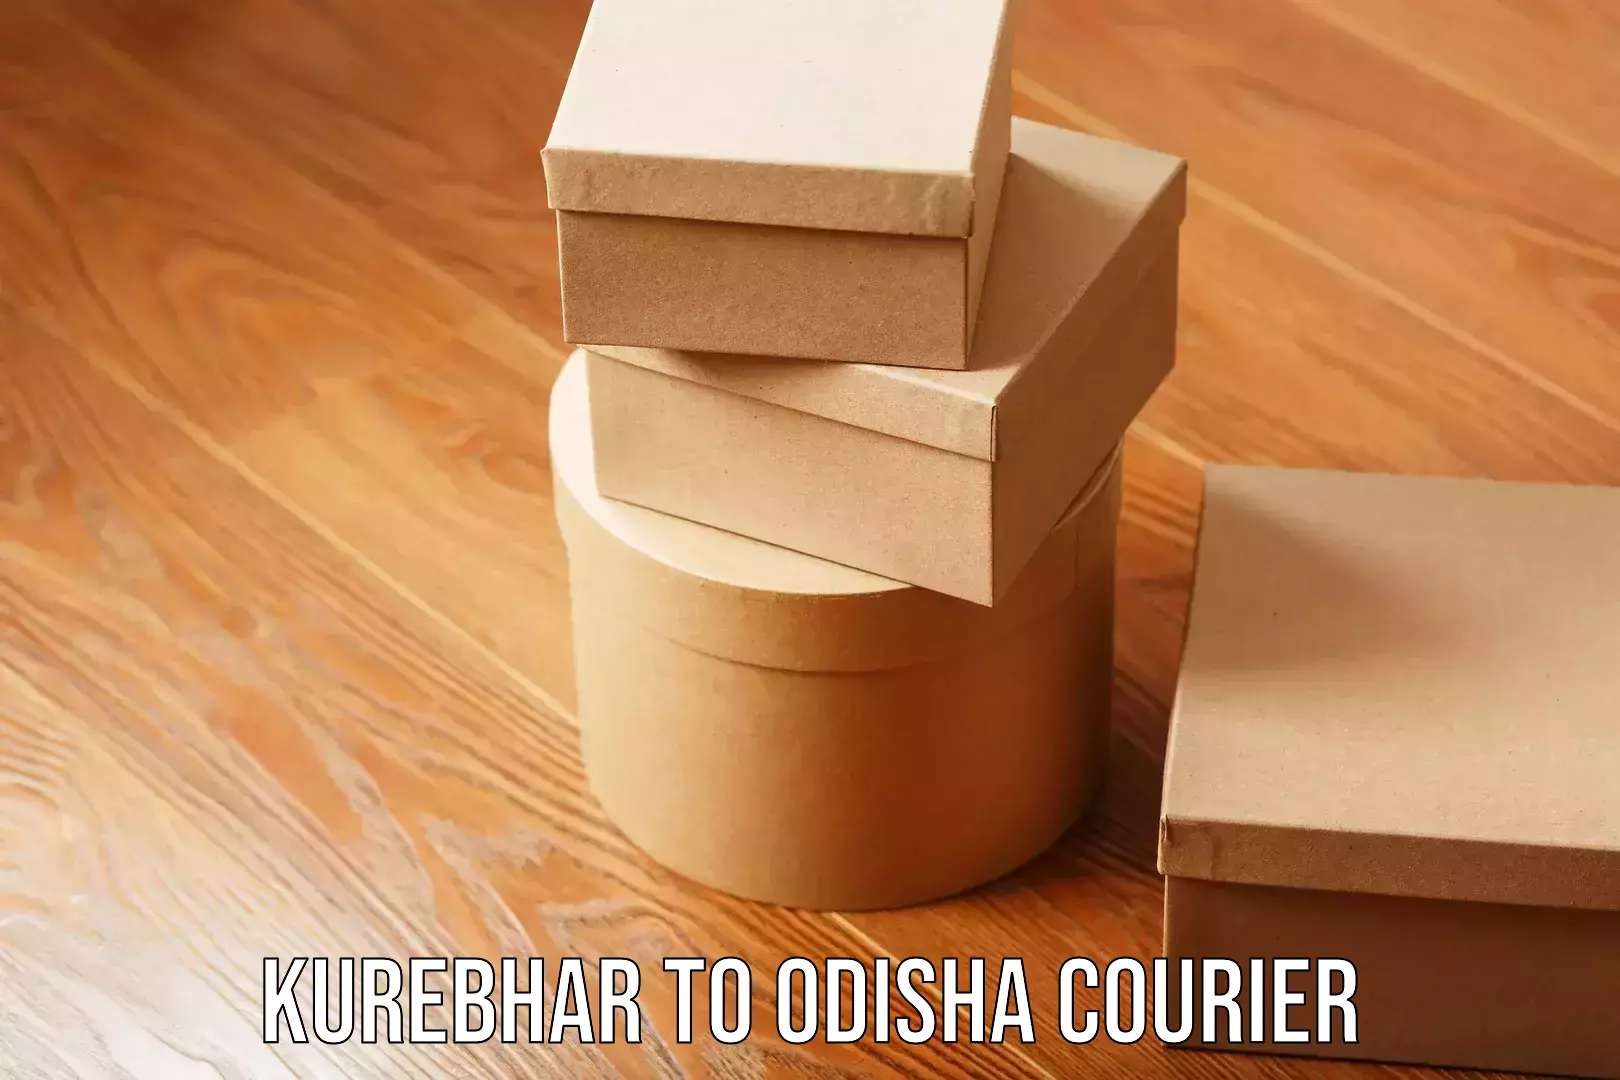 Expert goods movers Kurebhar to Odisha